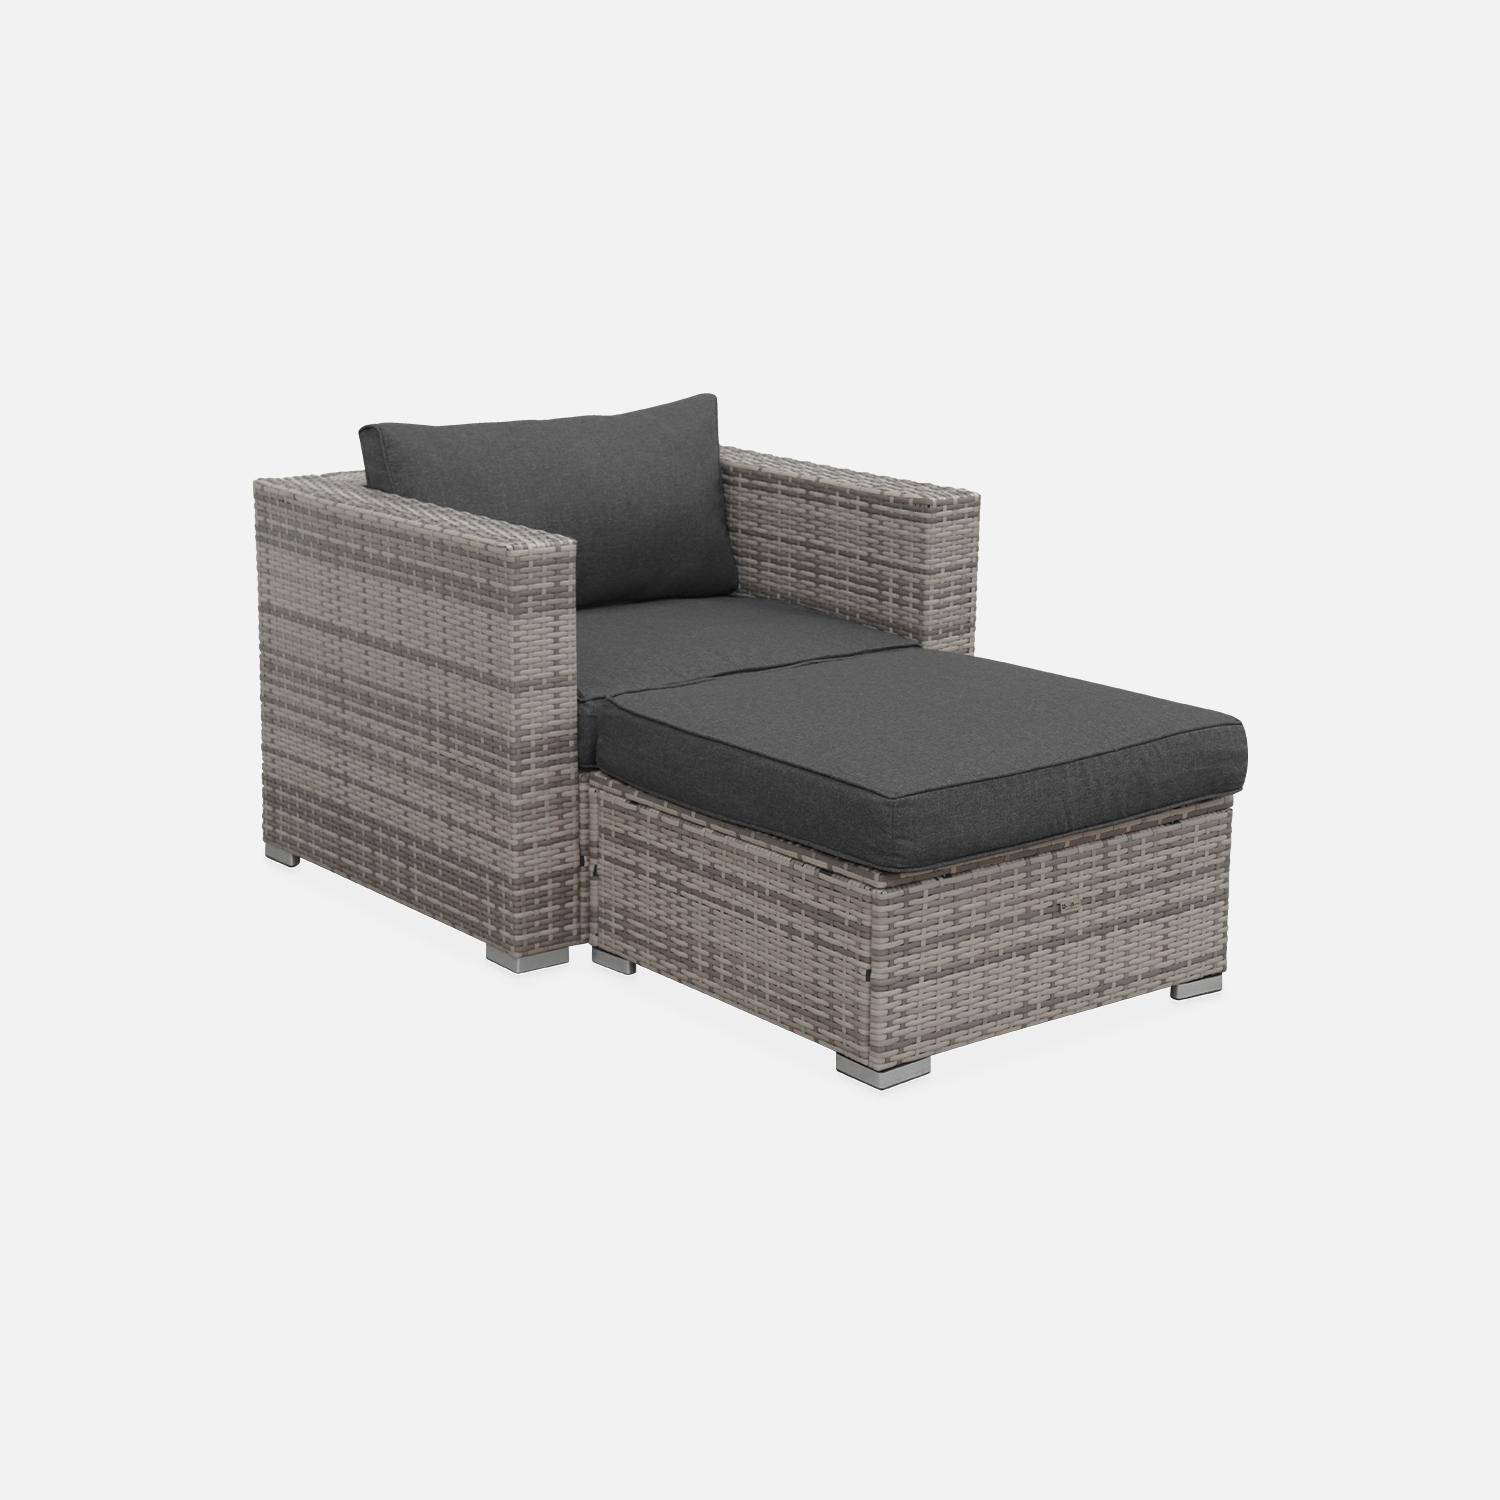 Garden sofa sets - armchair and footstool in rattan - Genova -  Mixed Grey rattan, Grey cushions,sweeek,Photo2